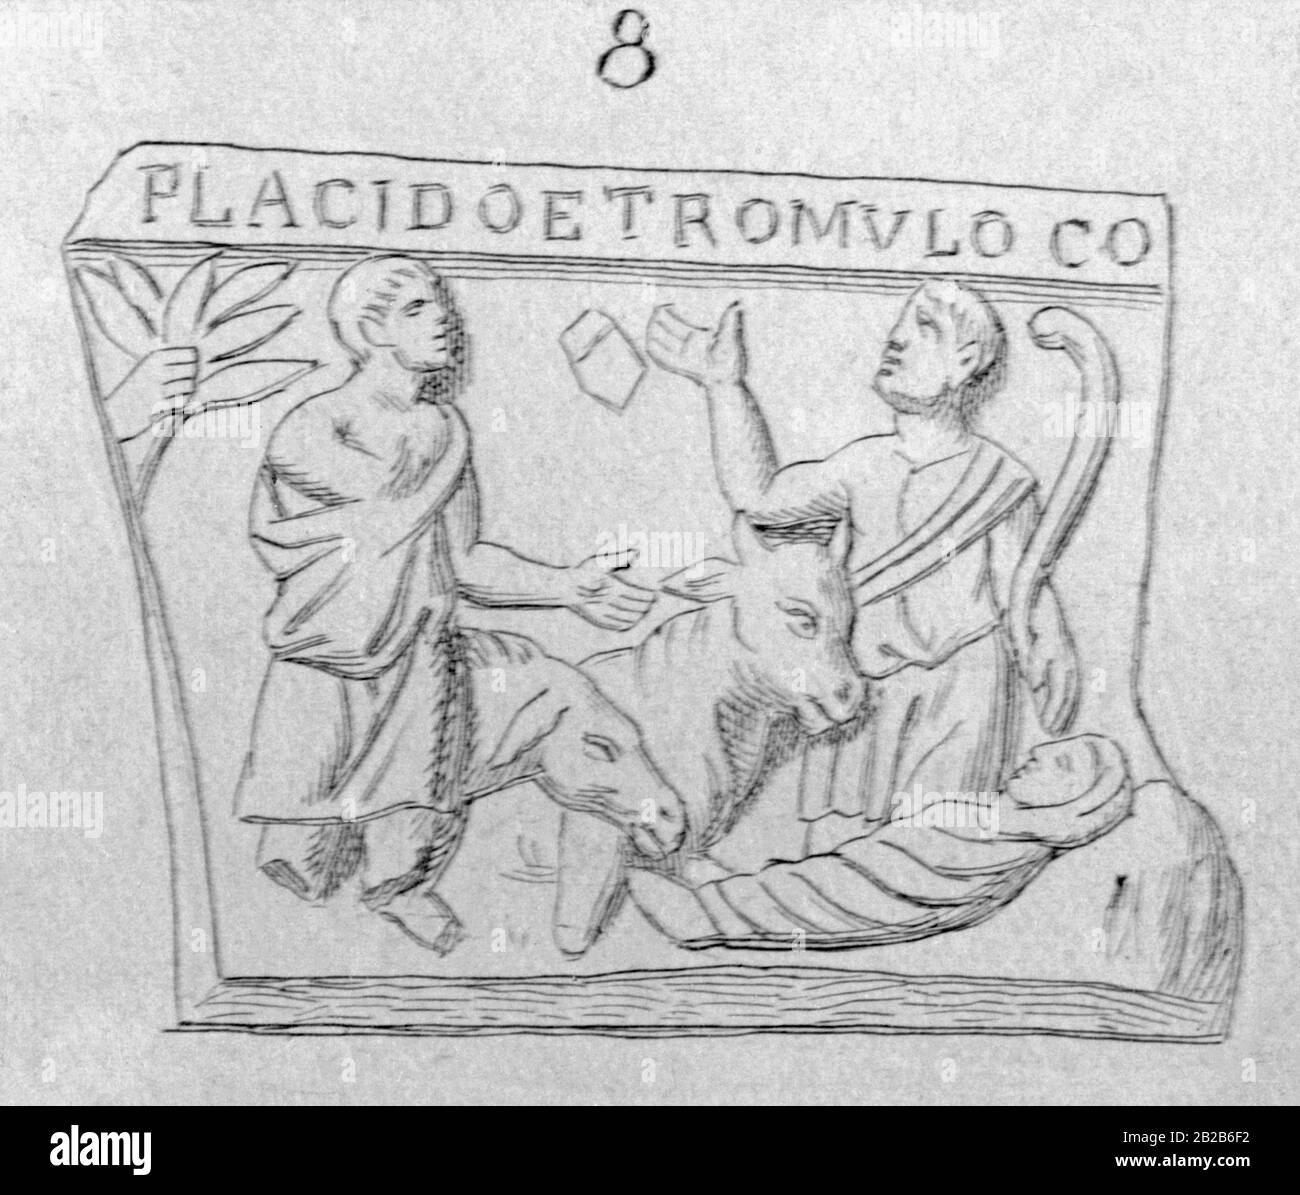 Ce soulagement est parmi les premières représentations connues de la naissance de Jésus. Il a été trouvé sur un sarcophage pendant les fouilles à Split en Dalmatie pendant la domination de la monarchie austro-hongroise. Banque D'Images